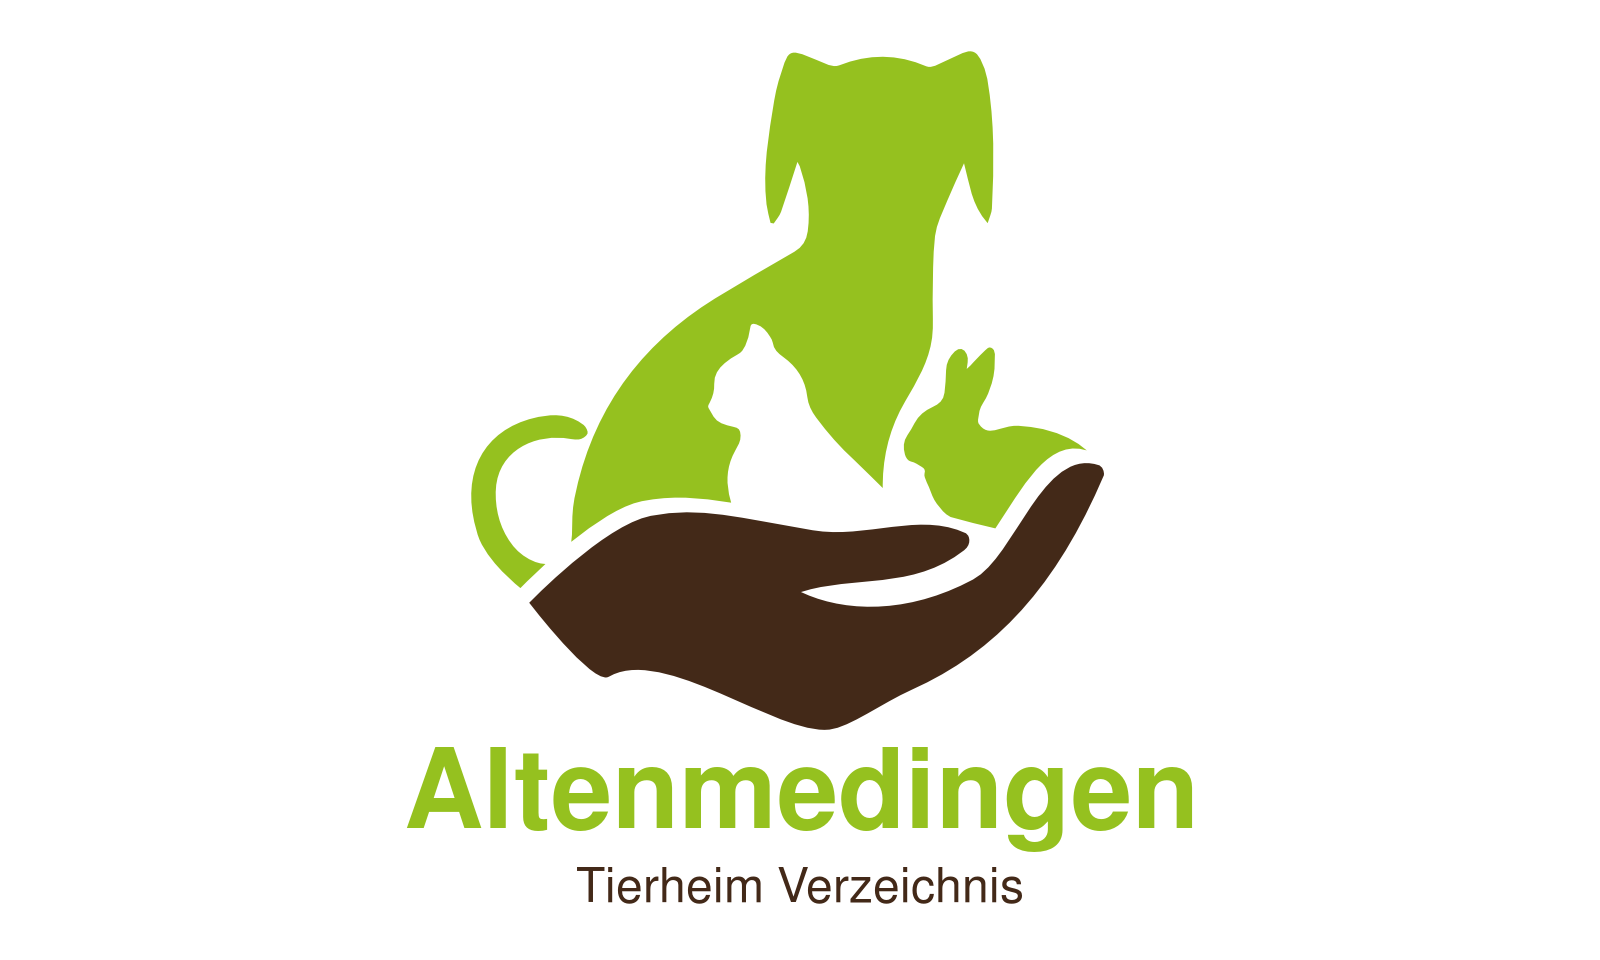 Tierheim Altenmedingen